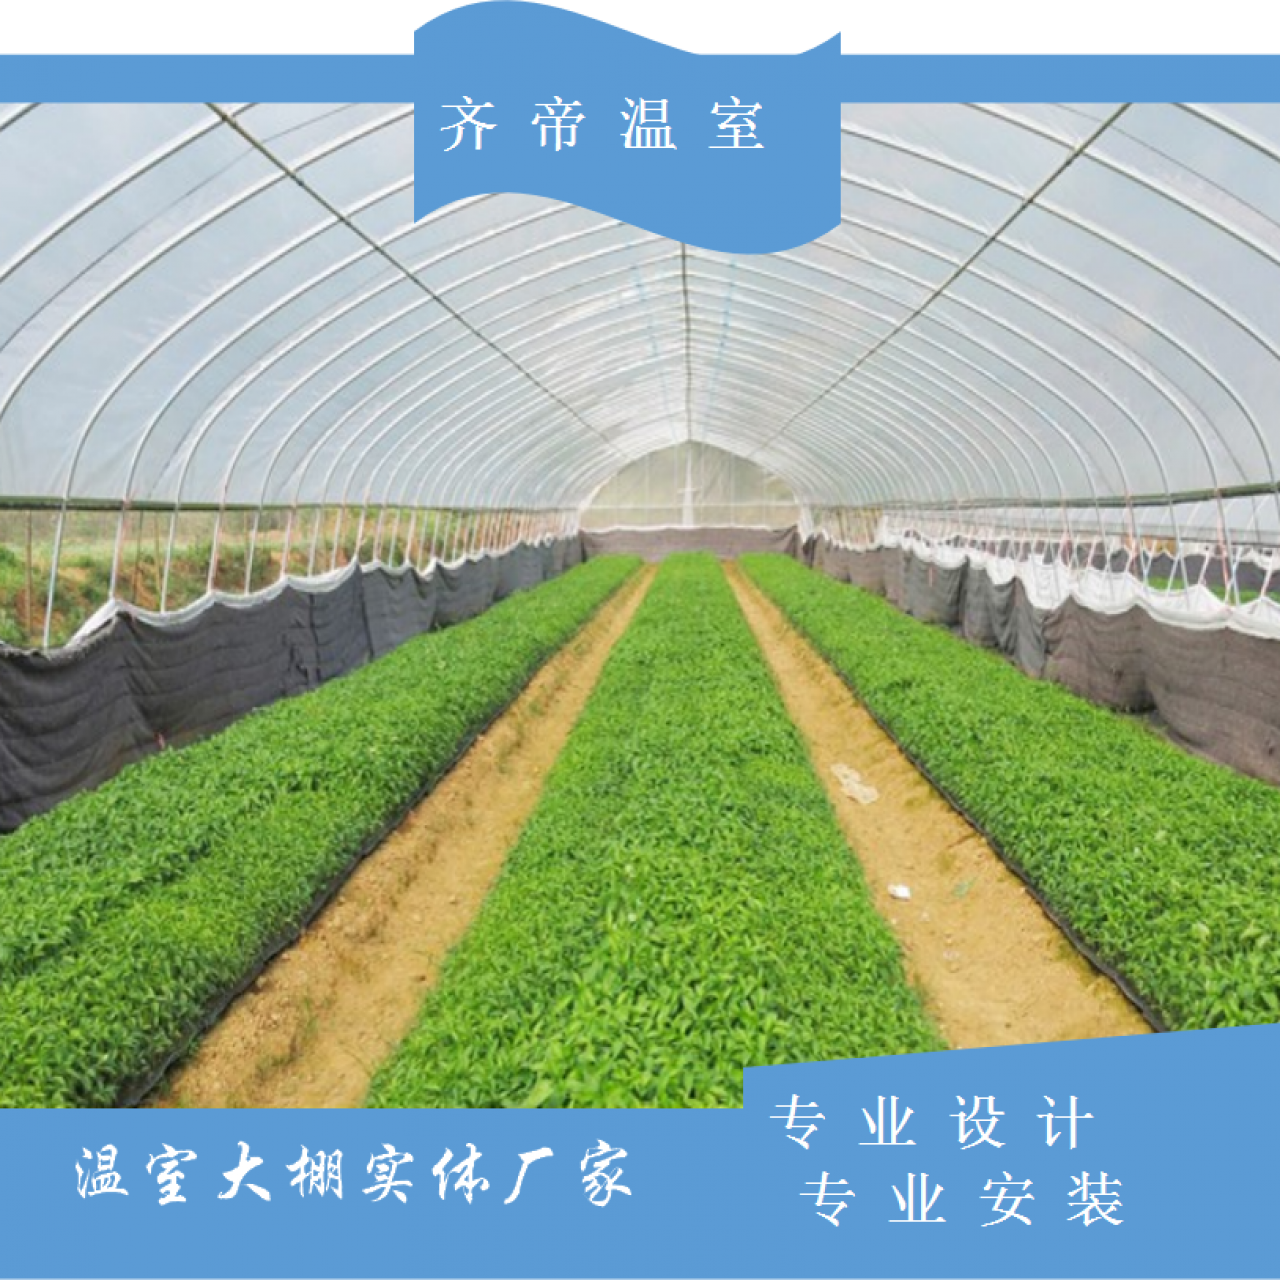 上海蔬菜单体拱棚 水果单体拱棚 单体拱棚价格 齐帝单体温室大棚